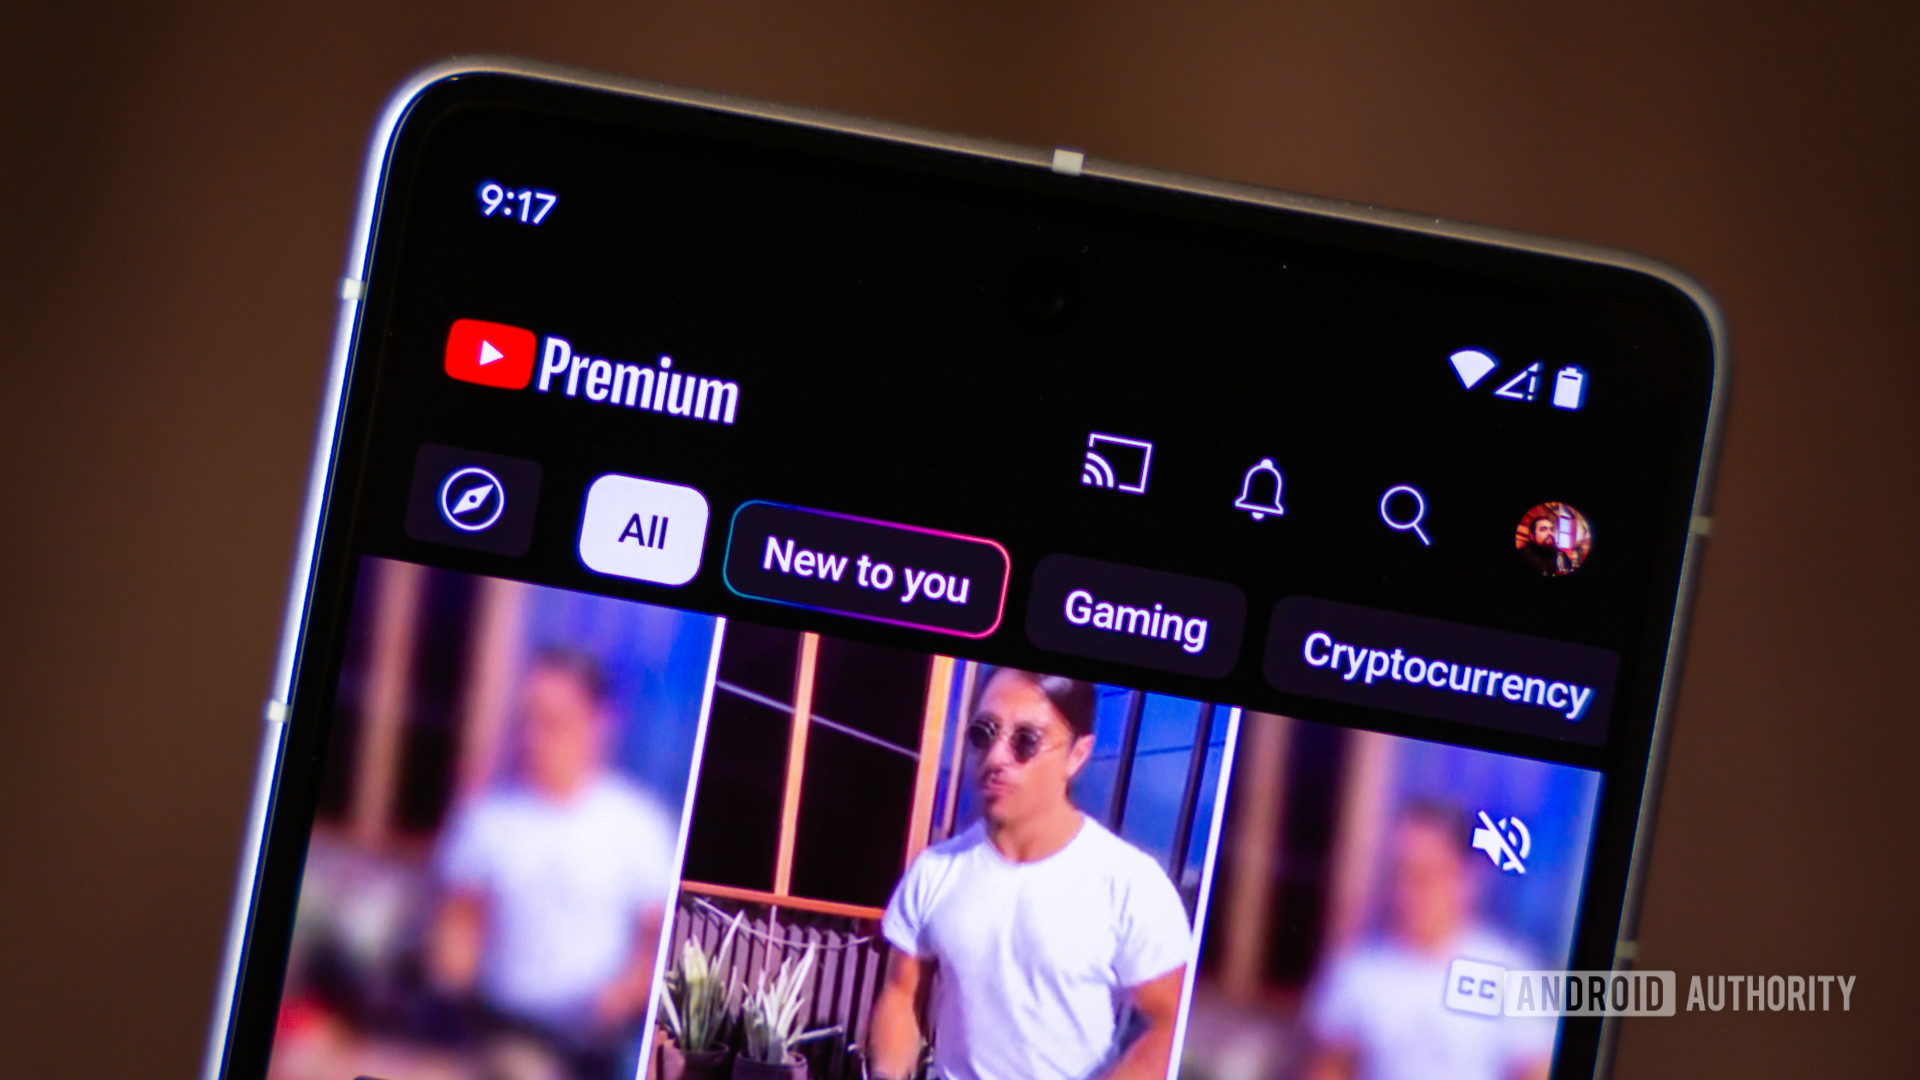 YouTube premium app on smartphone stock photo (1)